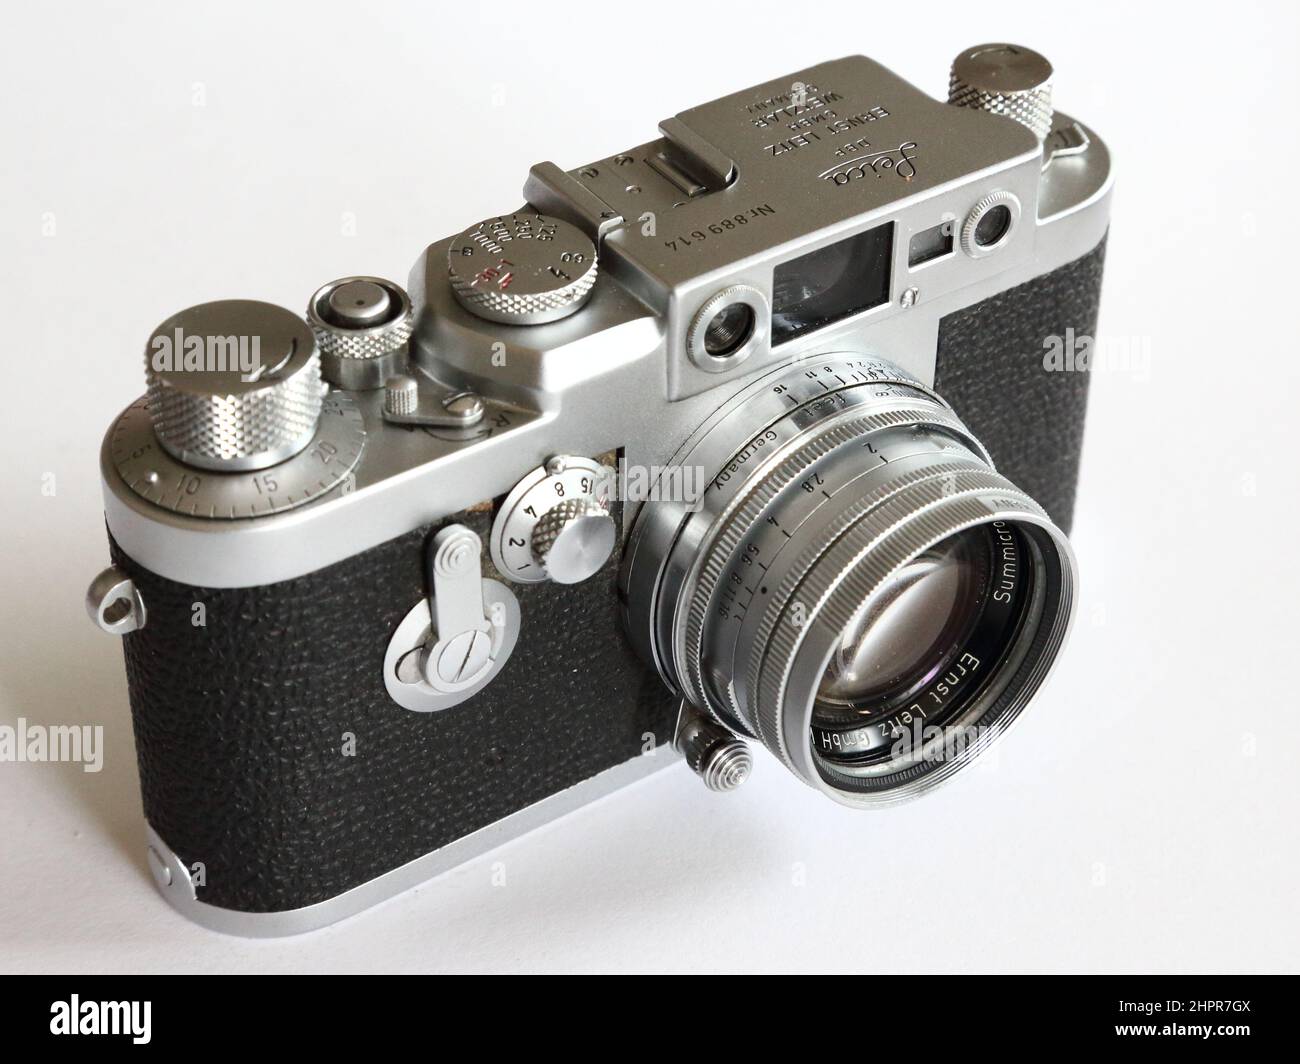 Une Leica IIIG allemande classique, une caméra idéale pour le photojournalisme Banque D'Images